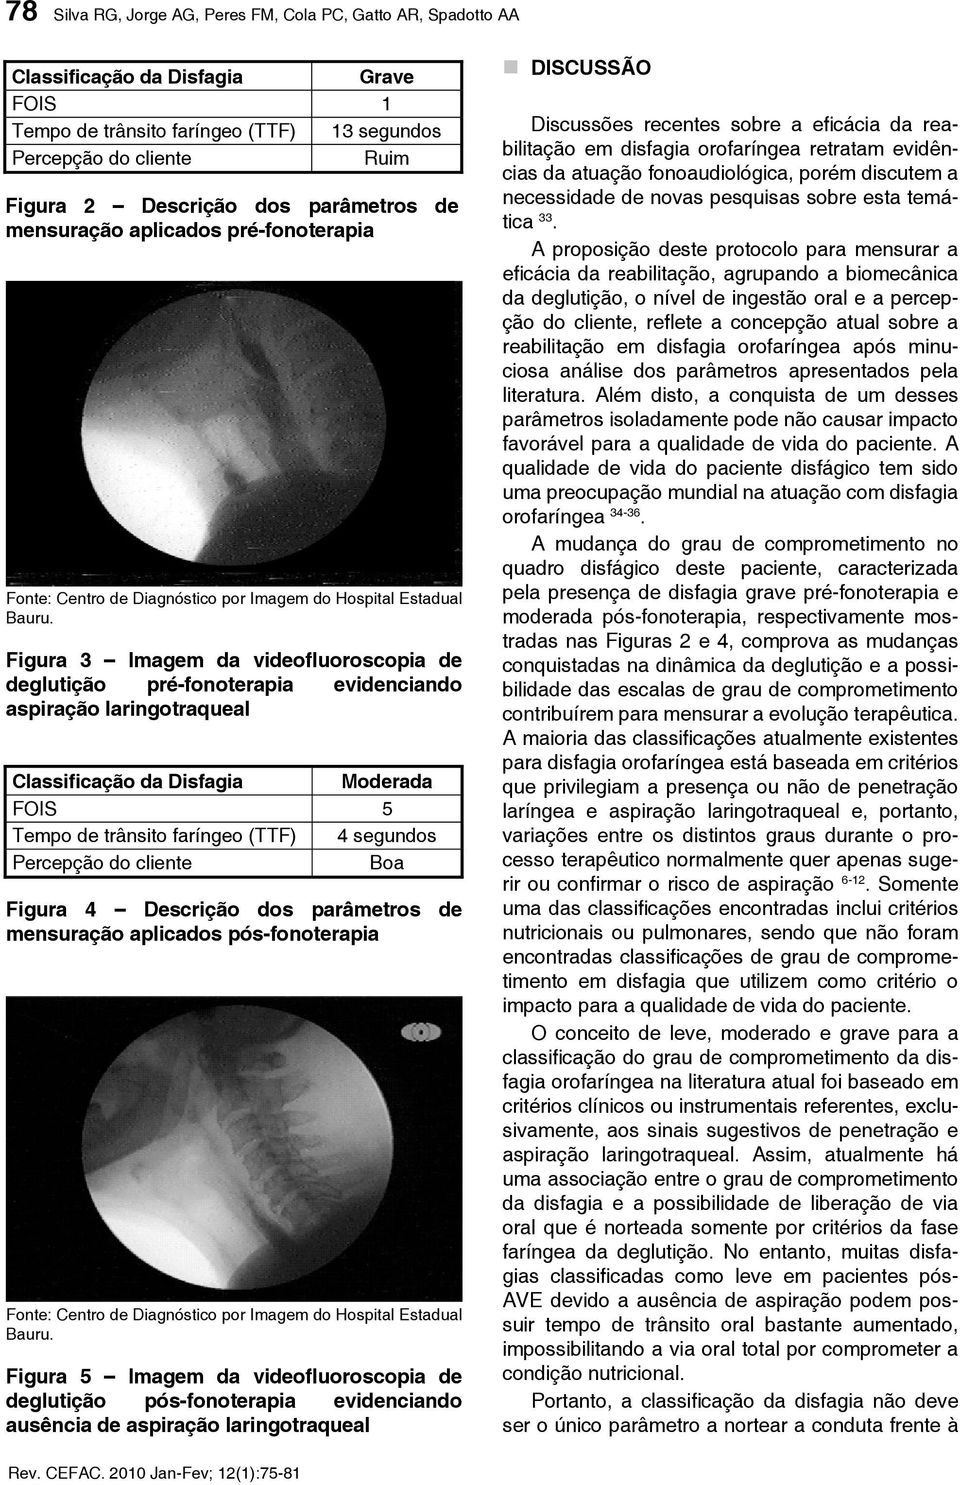 Figura 3 Imagem da videofluoroscopia de deglutição pré-fonoterapia evidenciando aspiração laringotraqueal Classificação da Disfagia Moderada FOIS 5 Tempo de trânsito faríngeo (TTF) 4 segundos